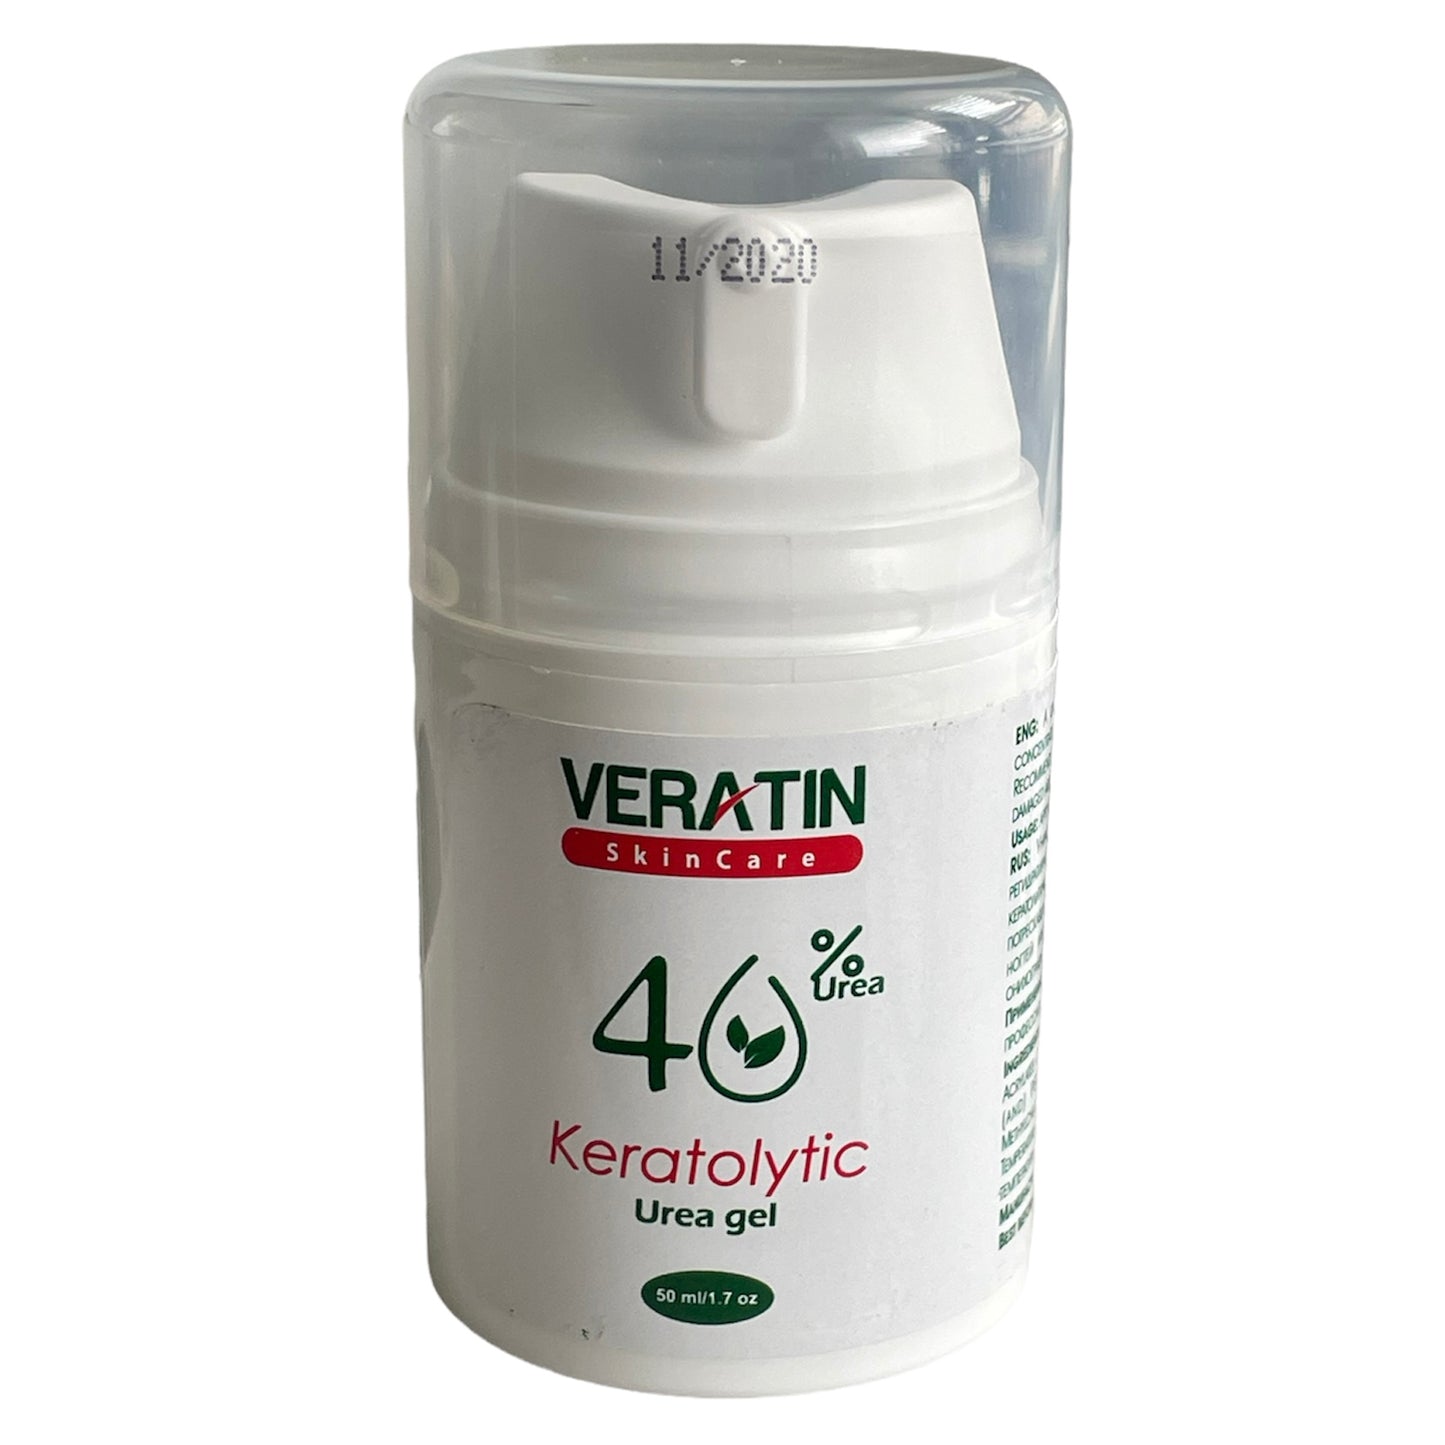 Veratin Keratolytic 40% Gel 50ml